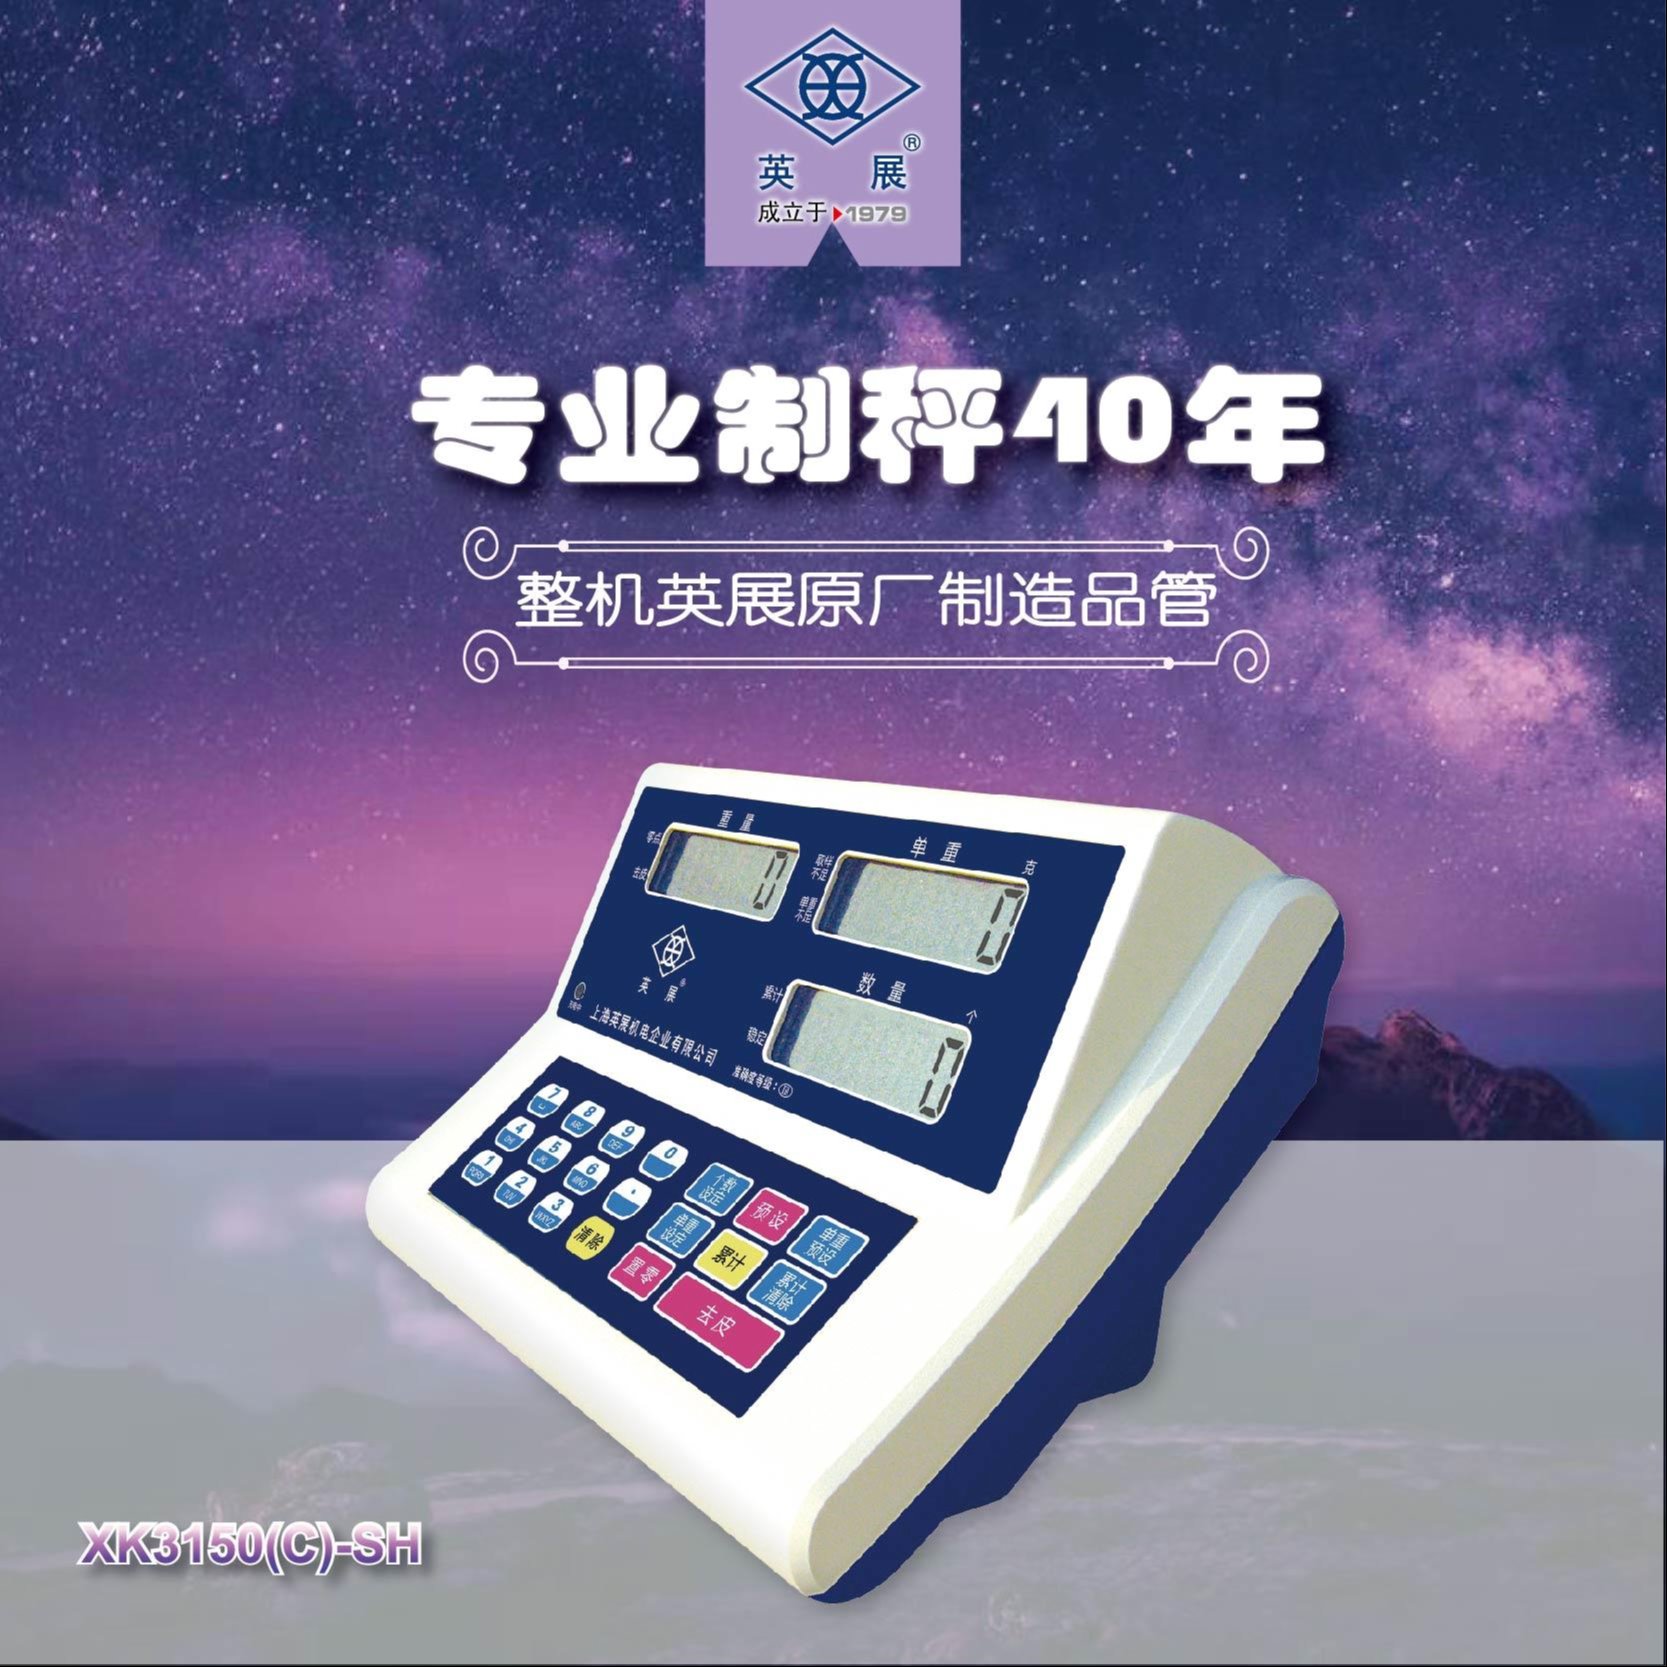 上海香川计价称重显示器，XK3150(P)-SH ，仪表显示器